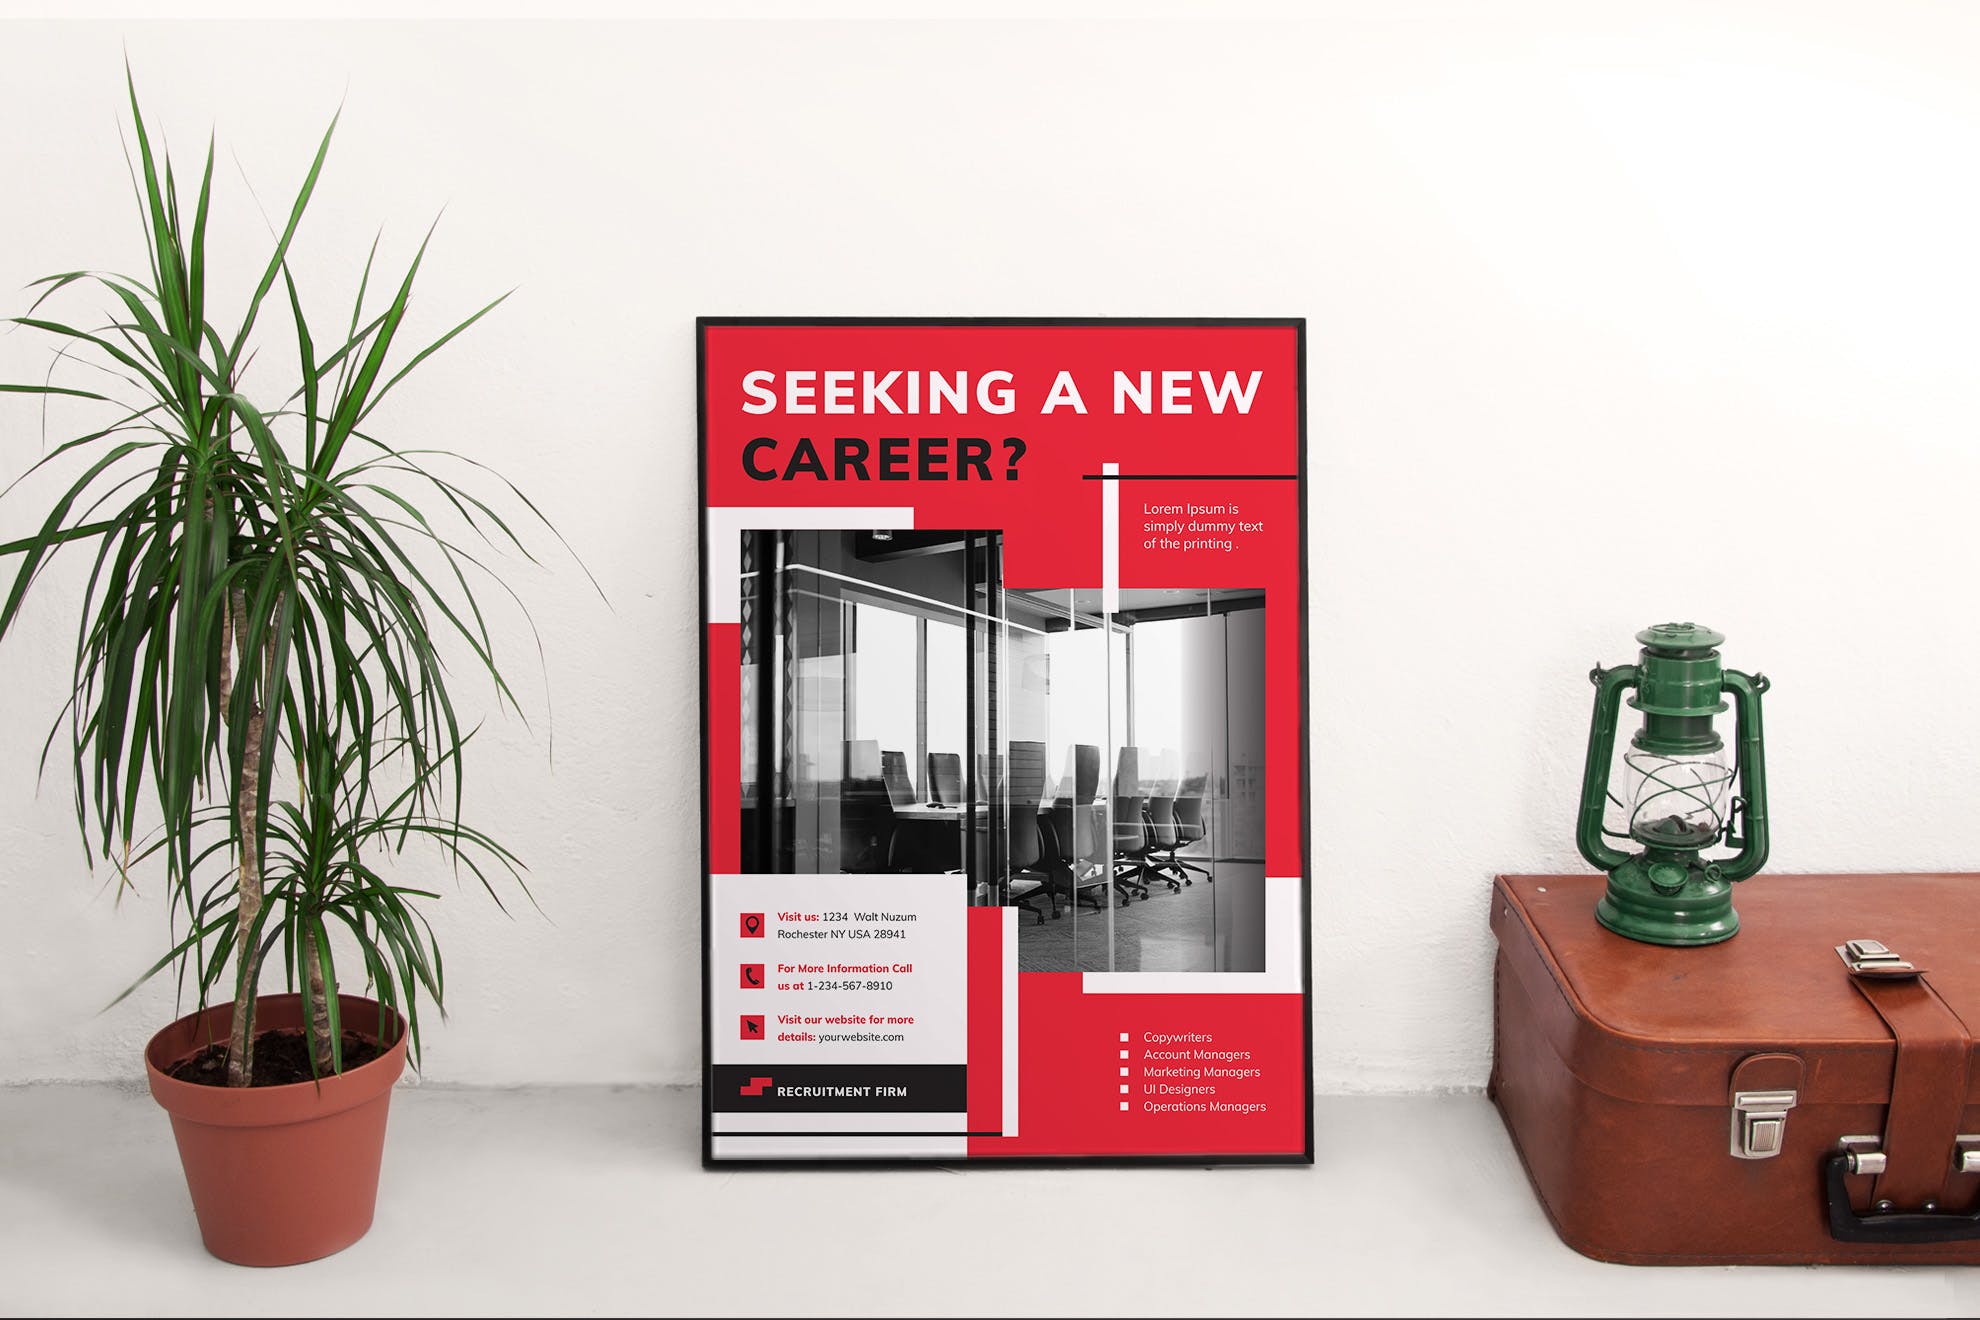 人力资源公司创意海报设计模板 Recruitment Firm Poster插图(2)